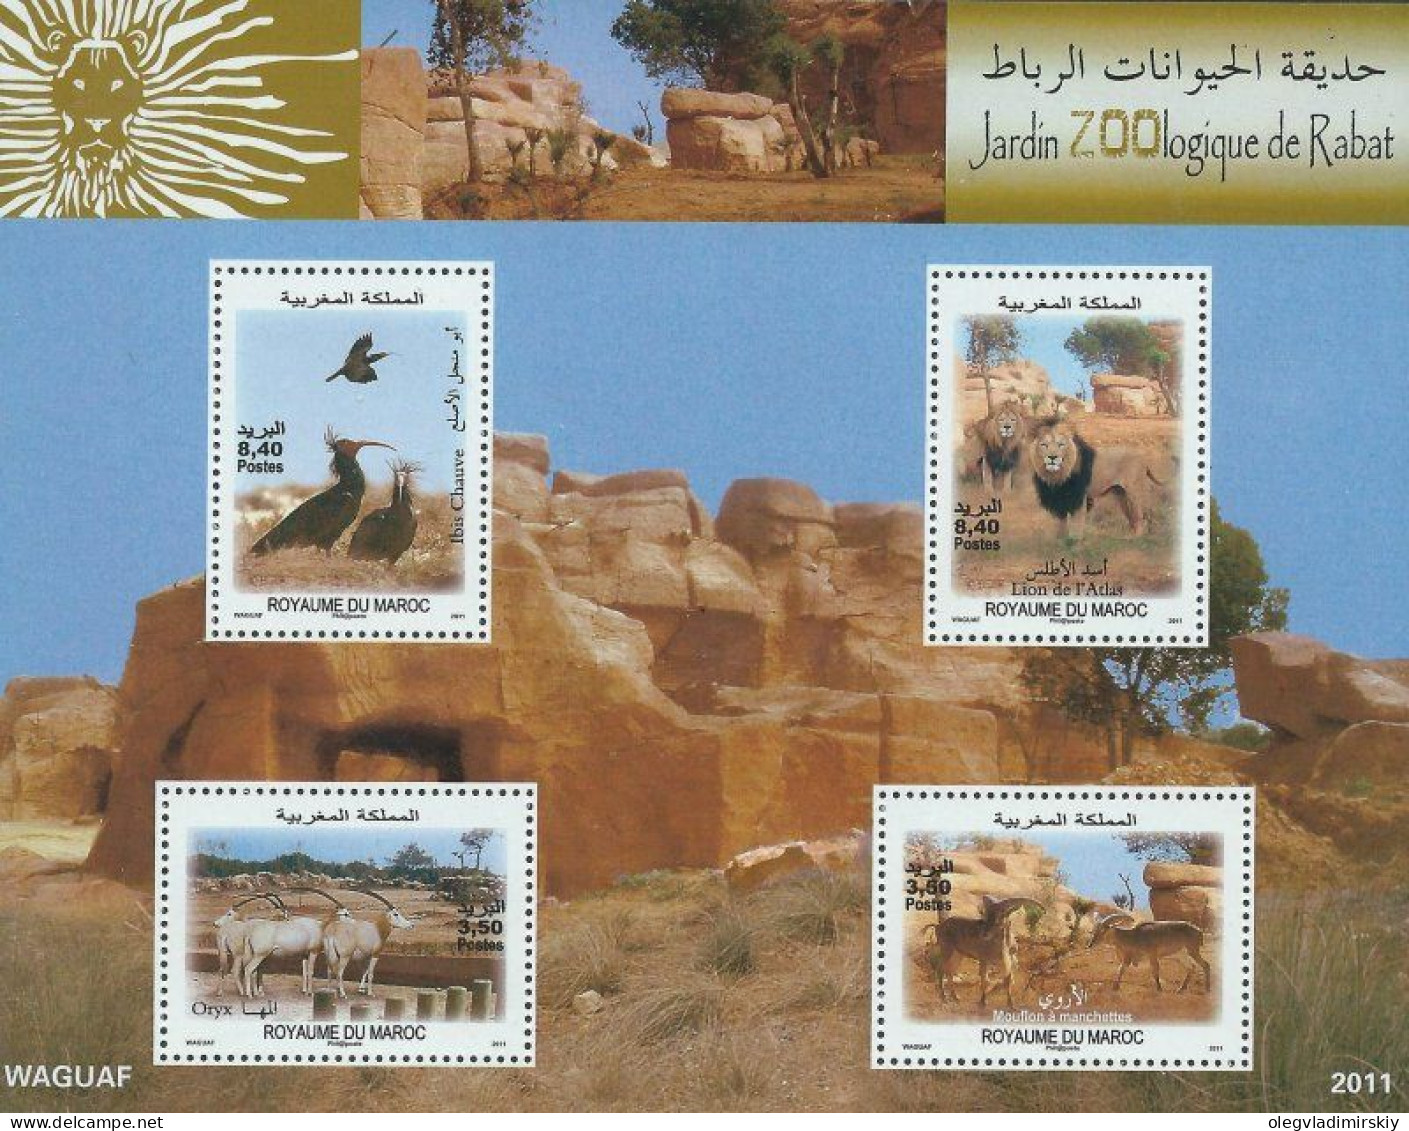 Morocco Maroc Marokko 2012 Rabat Zoo Lions Birds Artiodactyls Set Of 4 Stamps In Block MNH - Roofkatten